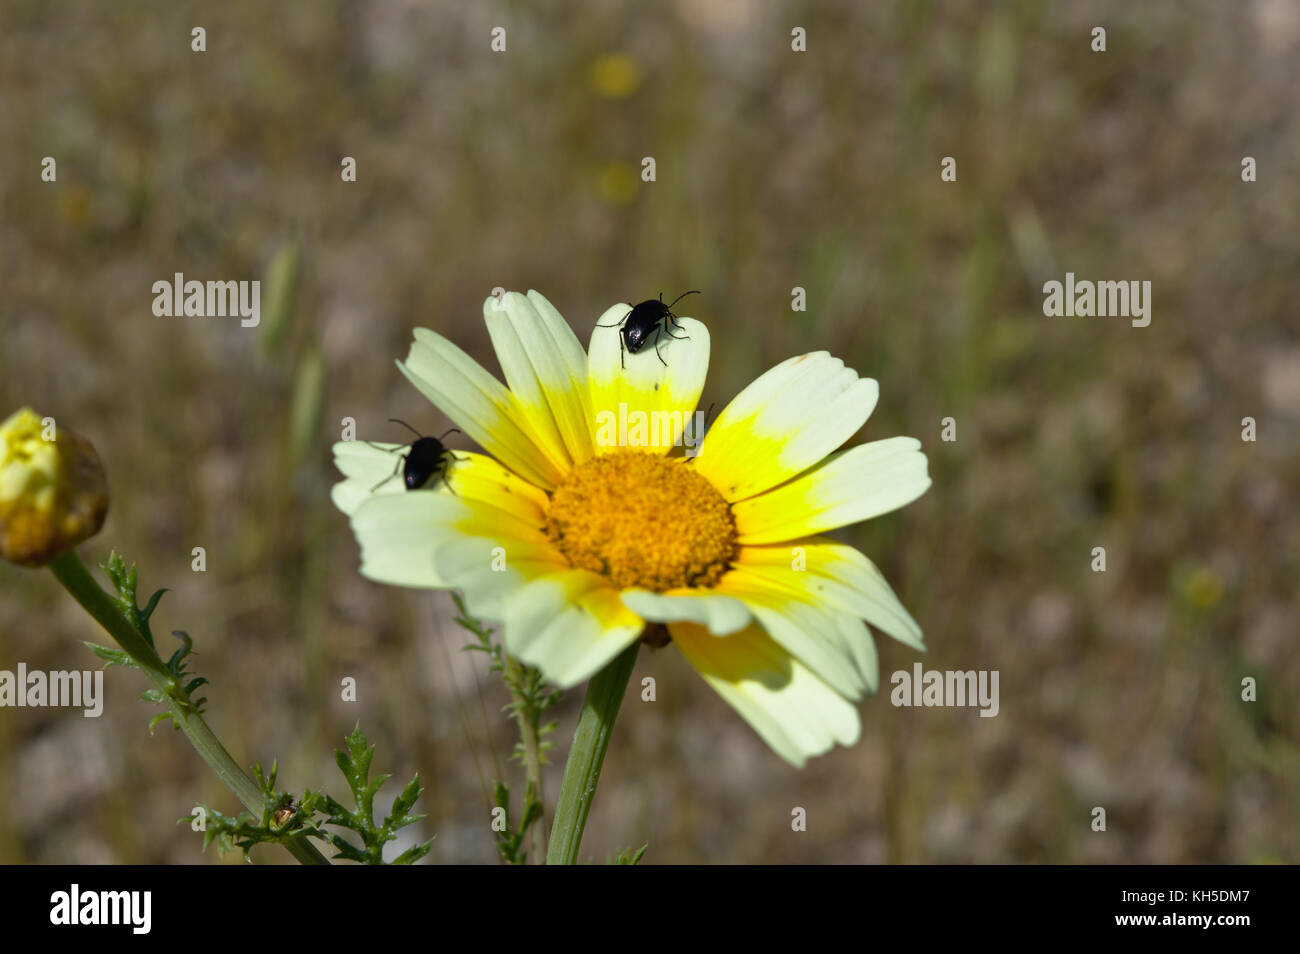 Bugs en amarillo en la colina philopappos daisy, Atenas, Attica, Grecia Foto de stock